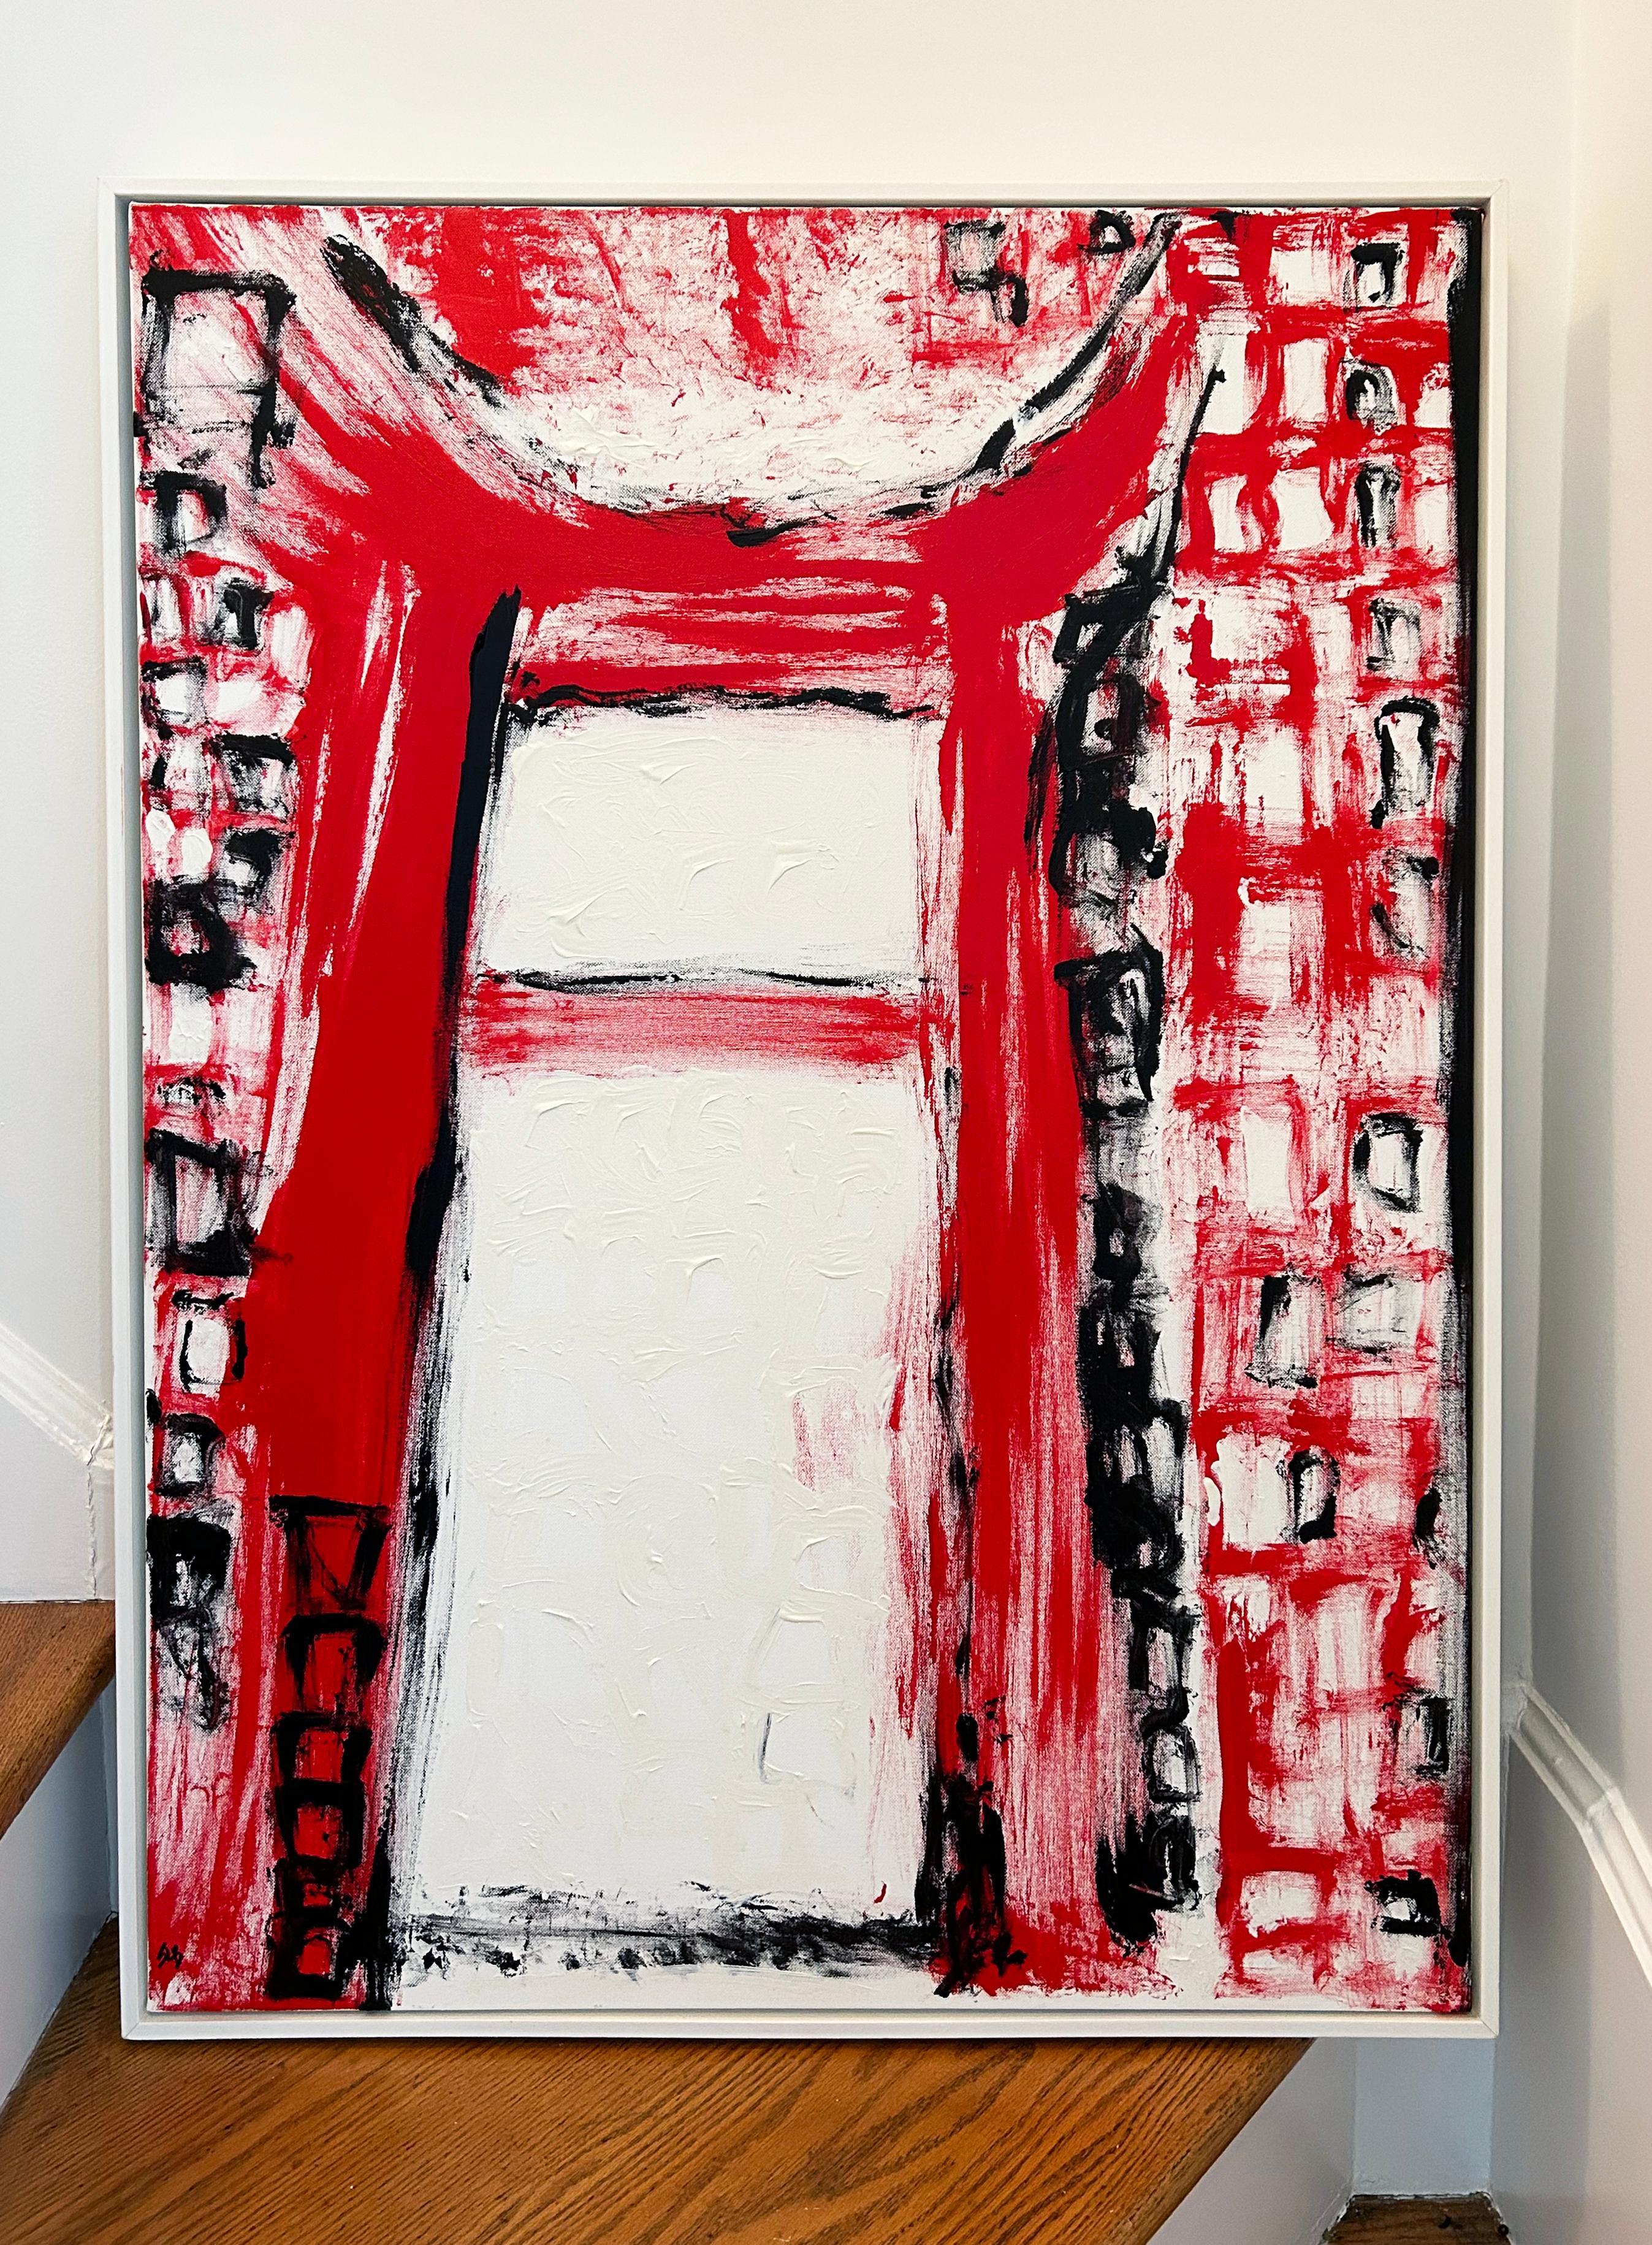 Red Gate, commentaire architectural abstrait et social de l'artiste féminine américaine - Painting de SL Baker